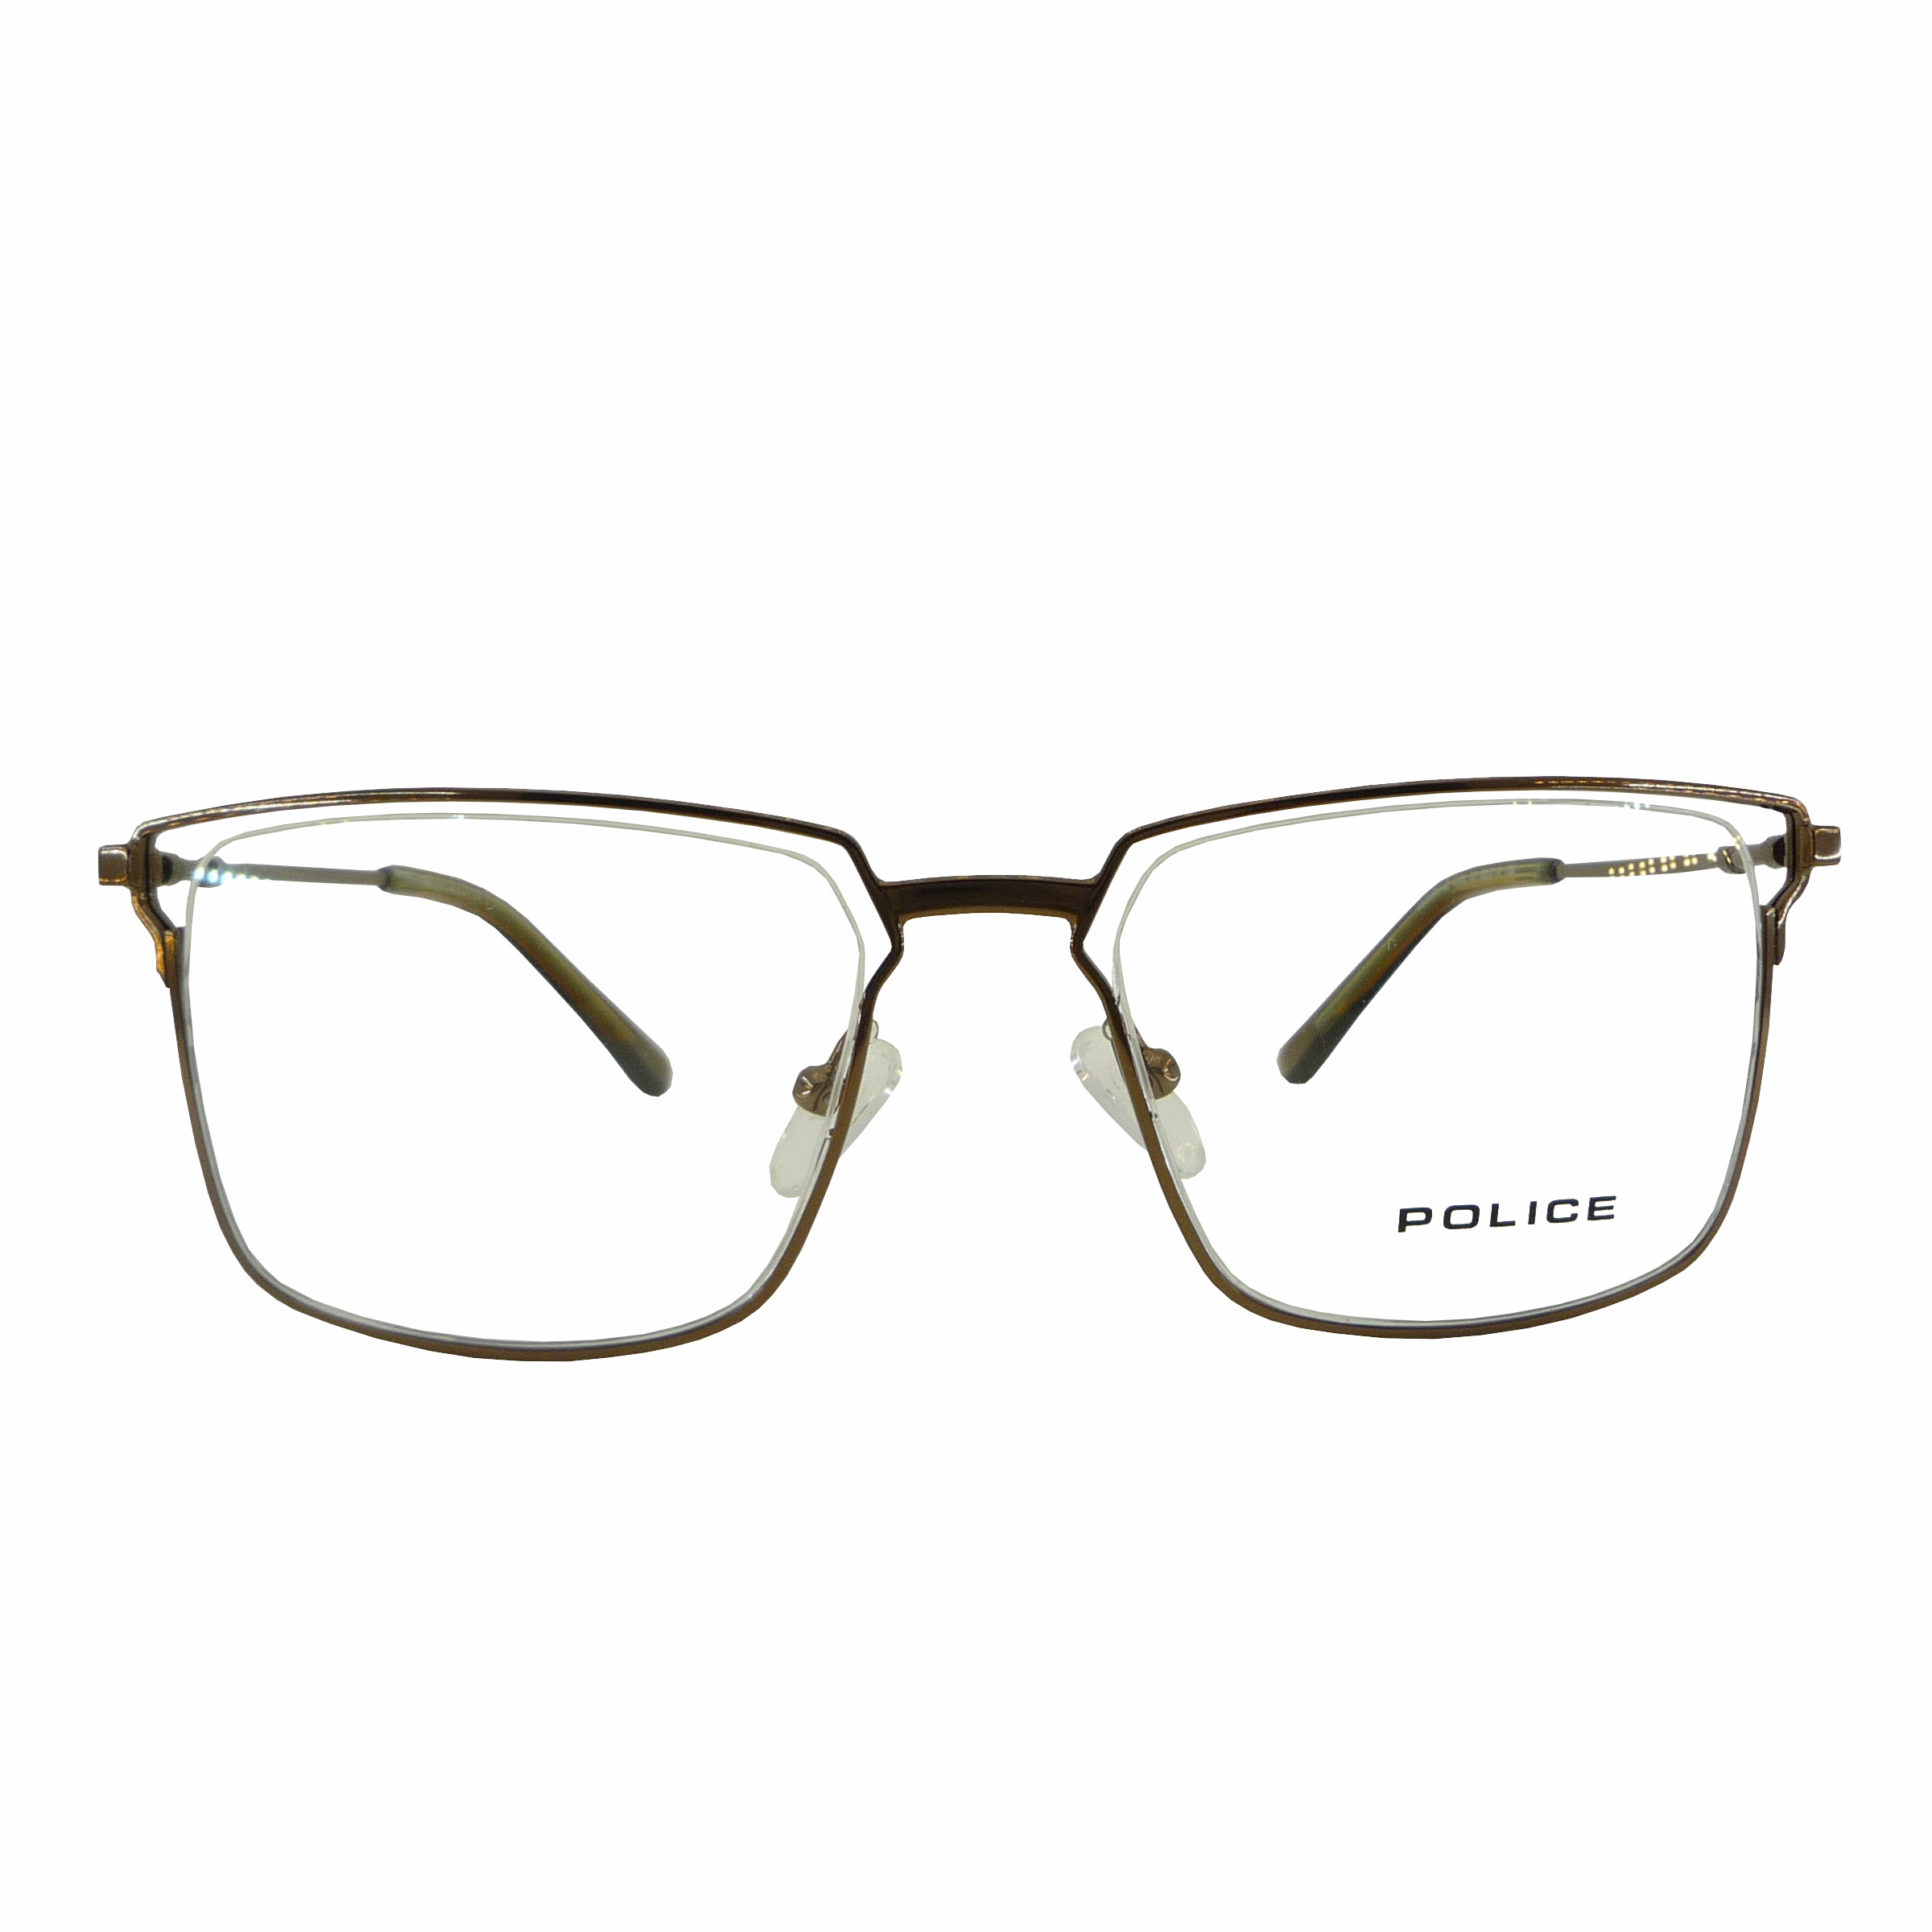 فریم عینک طبی پلیس مدل T2168-45560242C3